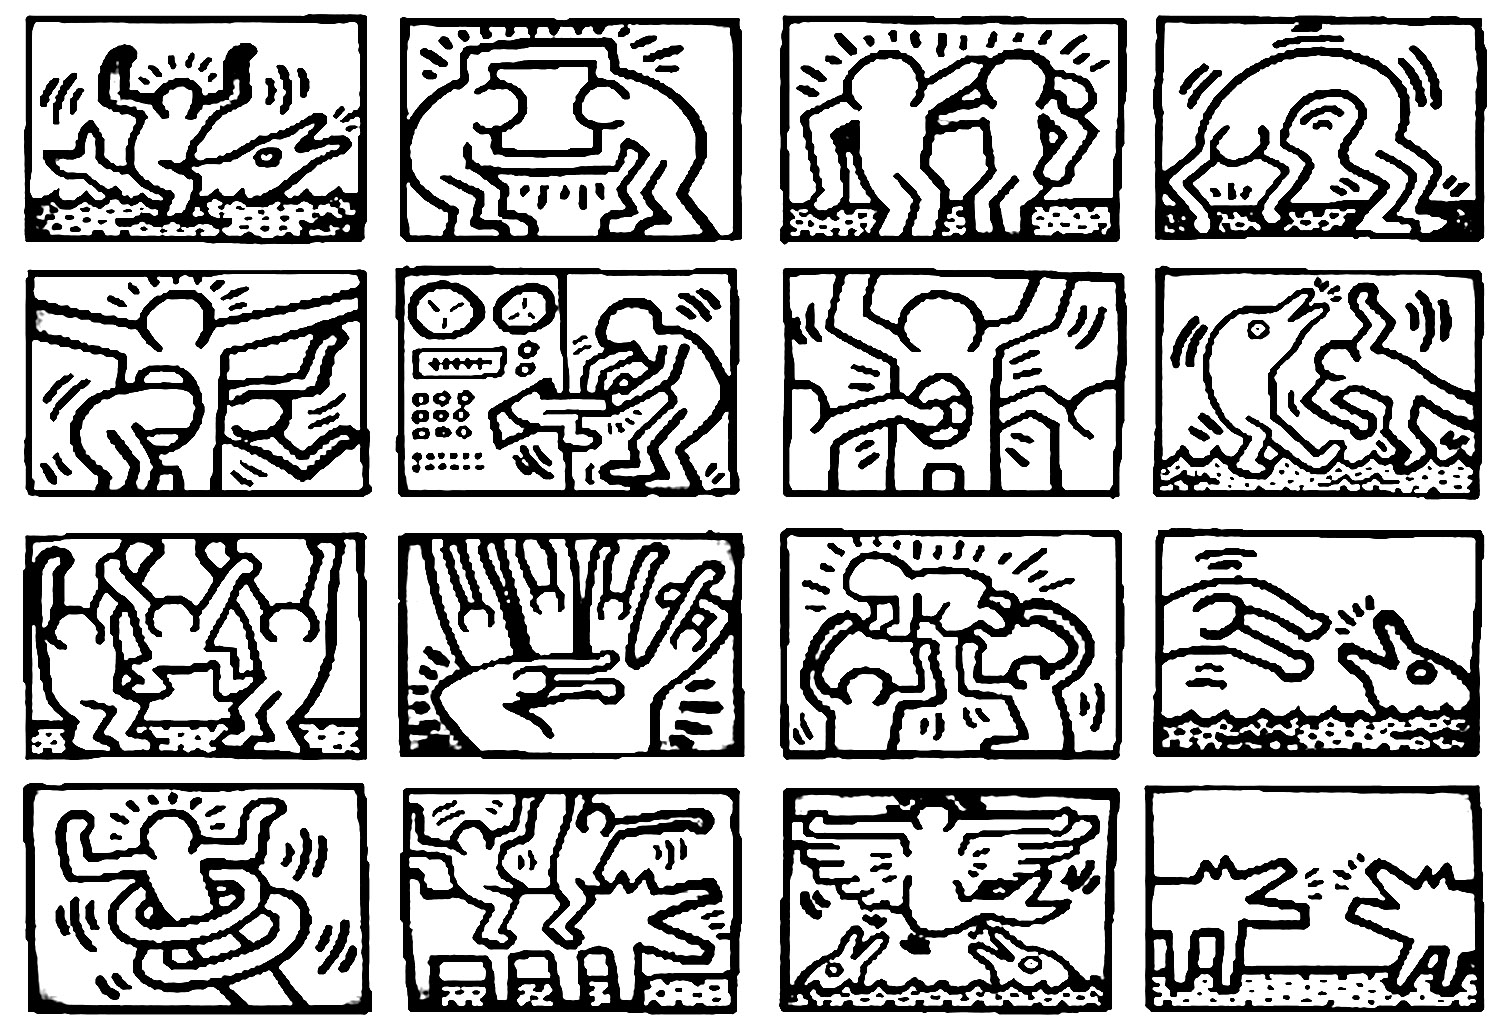 Personnages de Keith Haring   imprimer et colorier